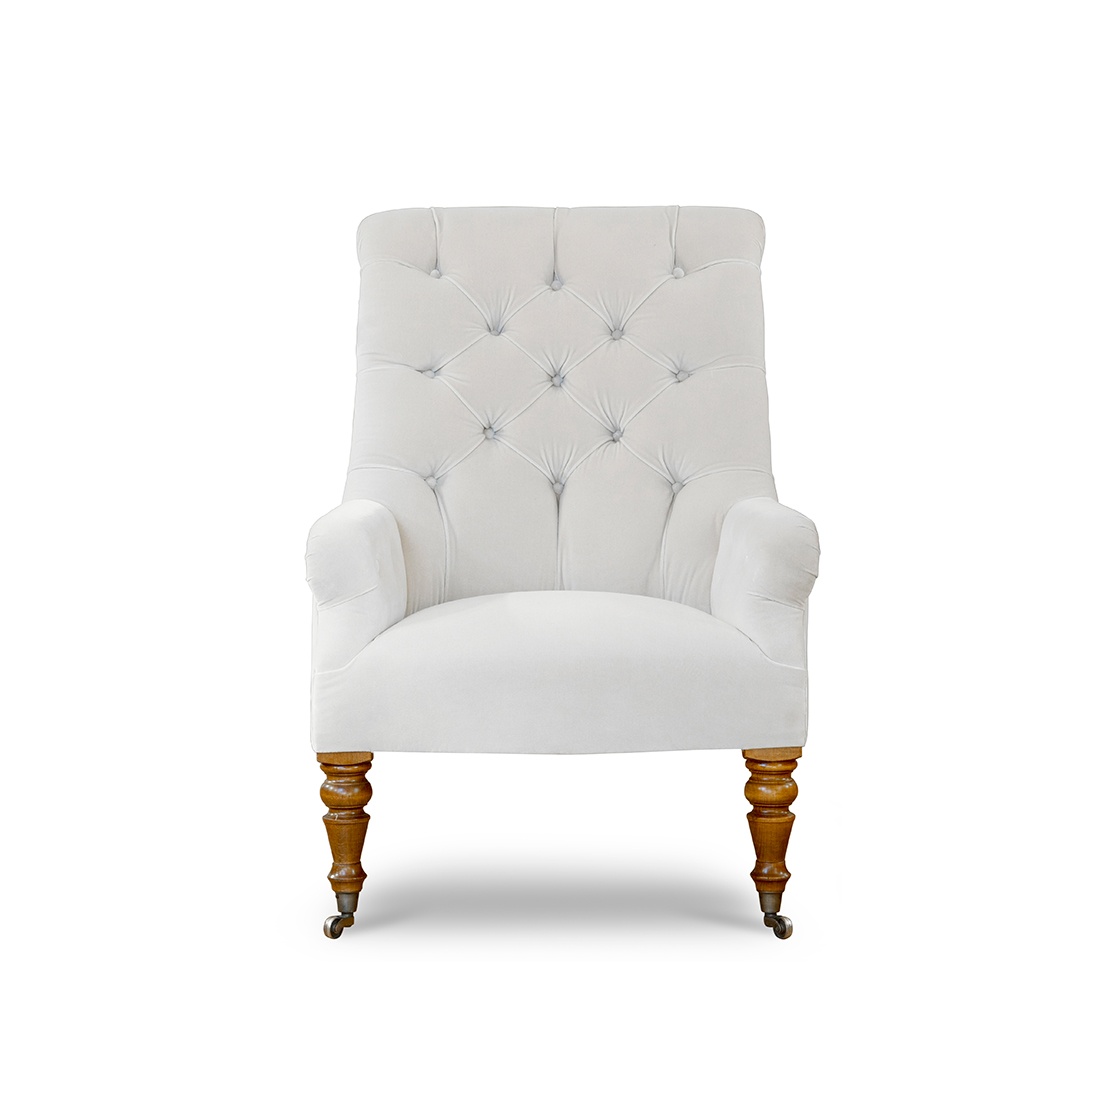 Waterford chair in Zafra cotton velvet - Ecru - Beaumont & Fletcher